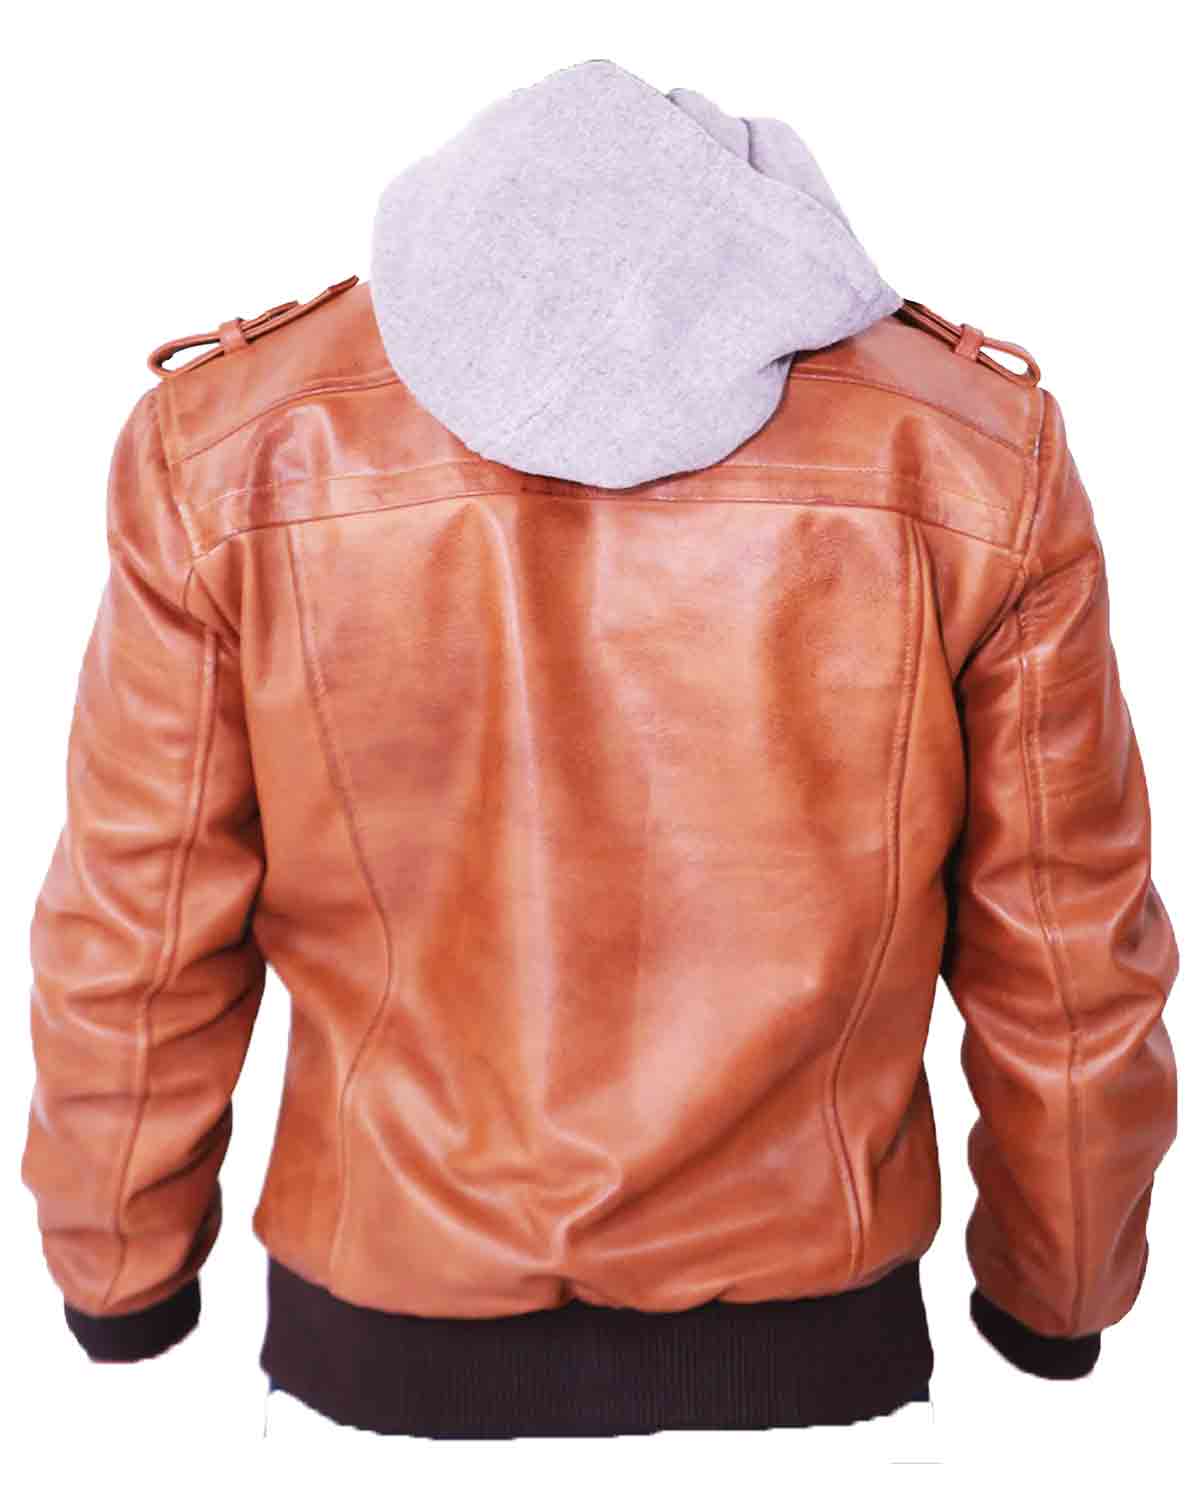 Mens Grey Removable Hood Brown Leather Jacket | Elite Jacket